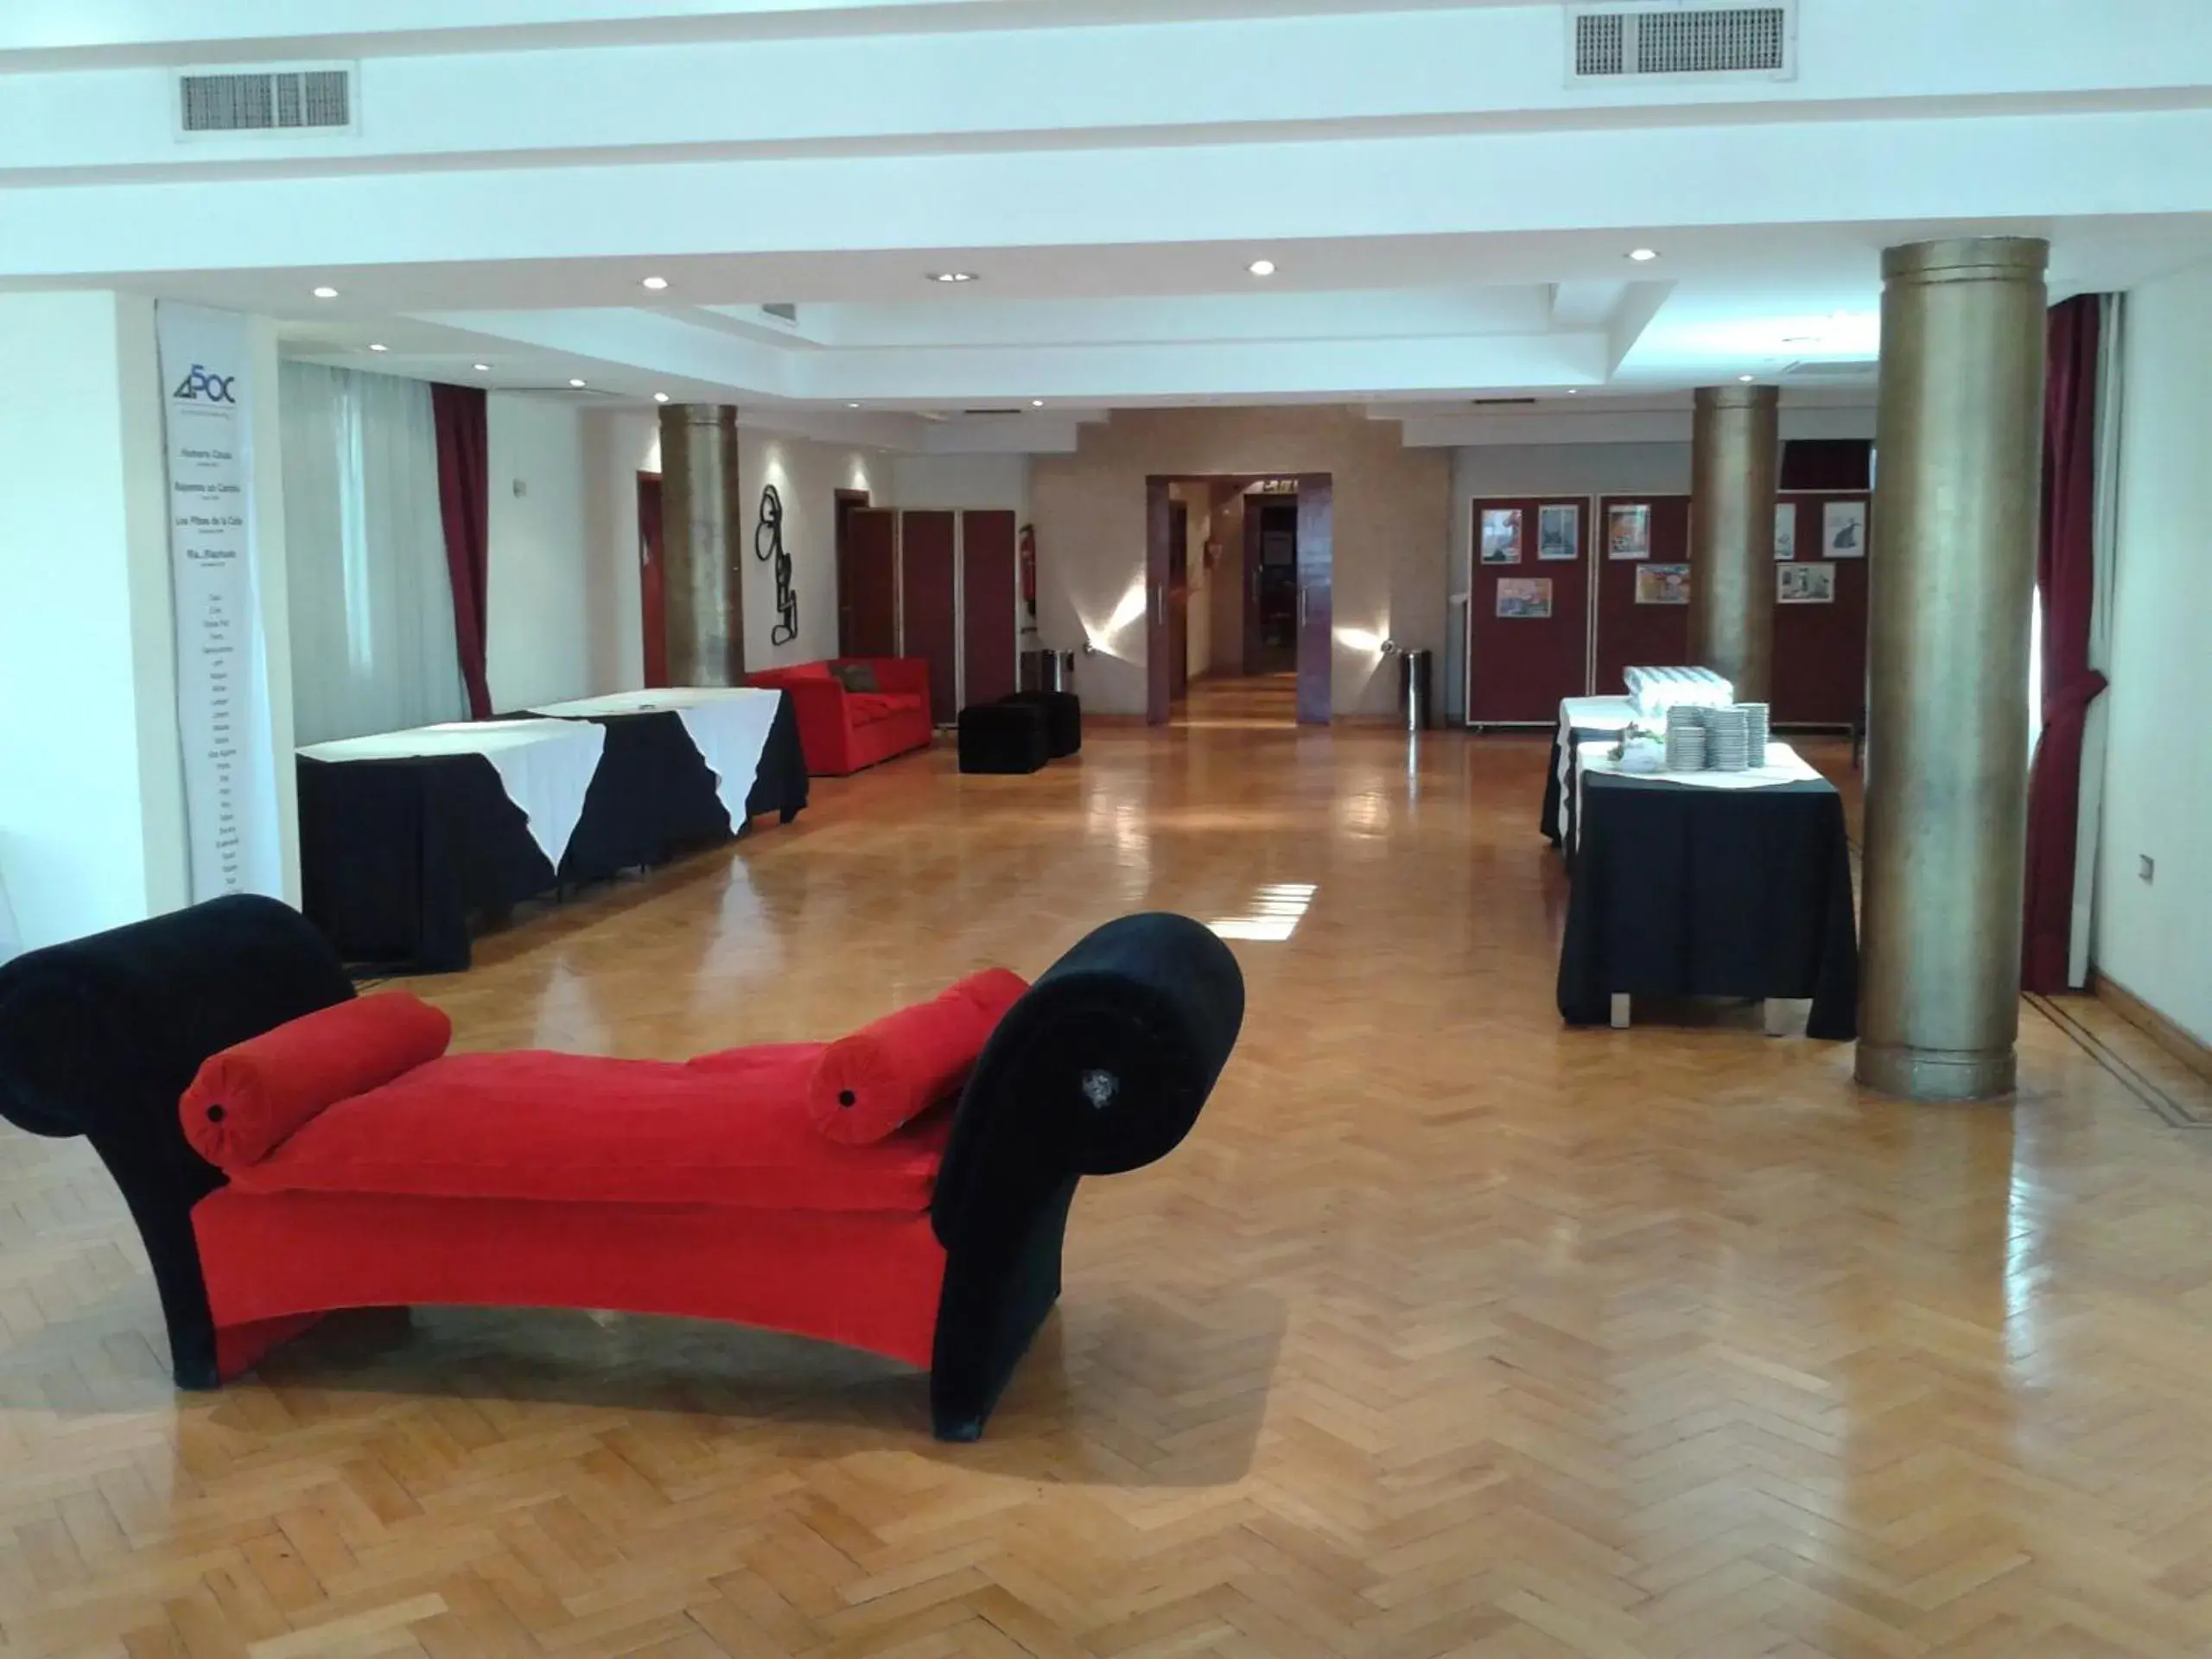 Lobby or reception, Lobby/Reception in Gran Hotel Presidente